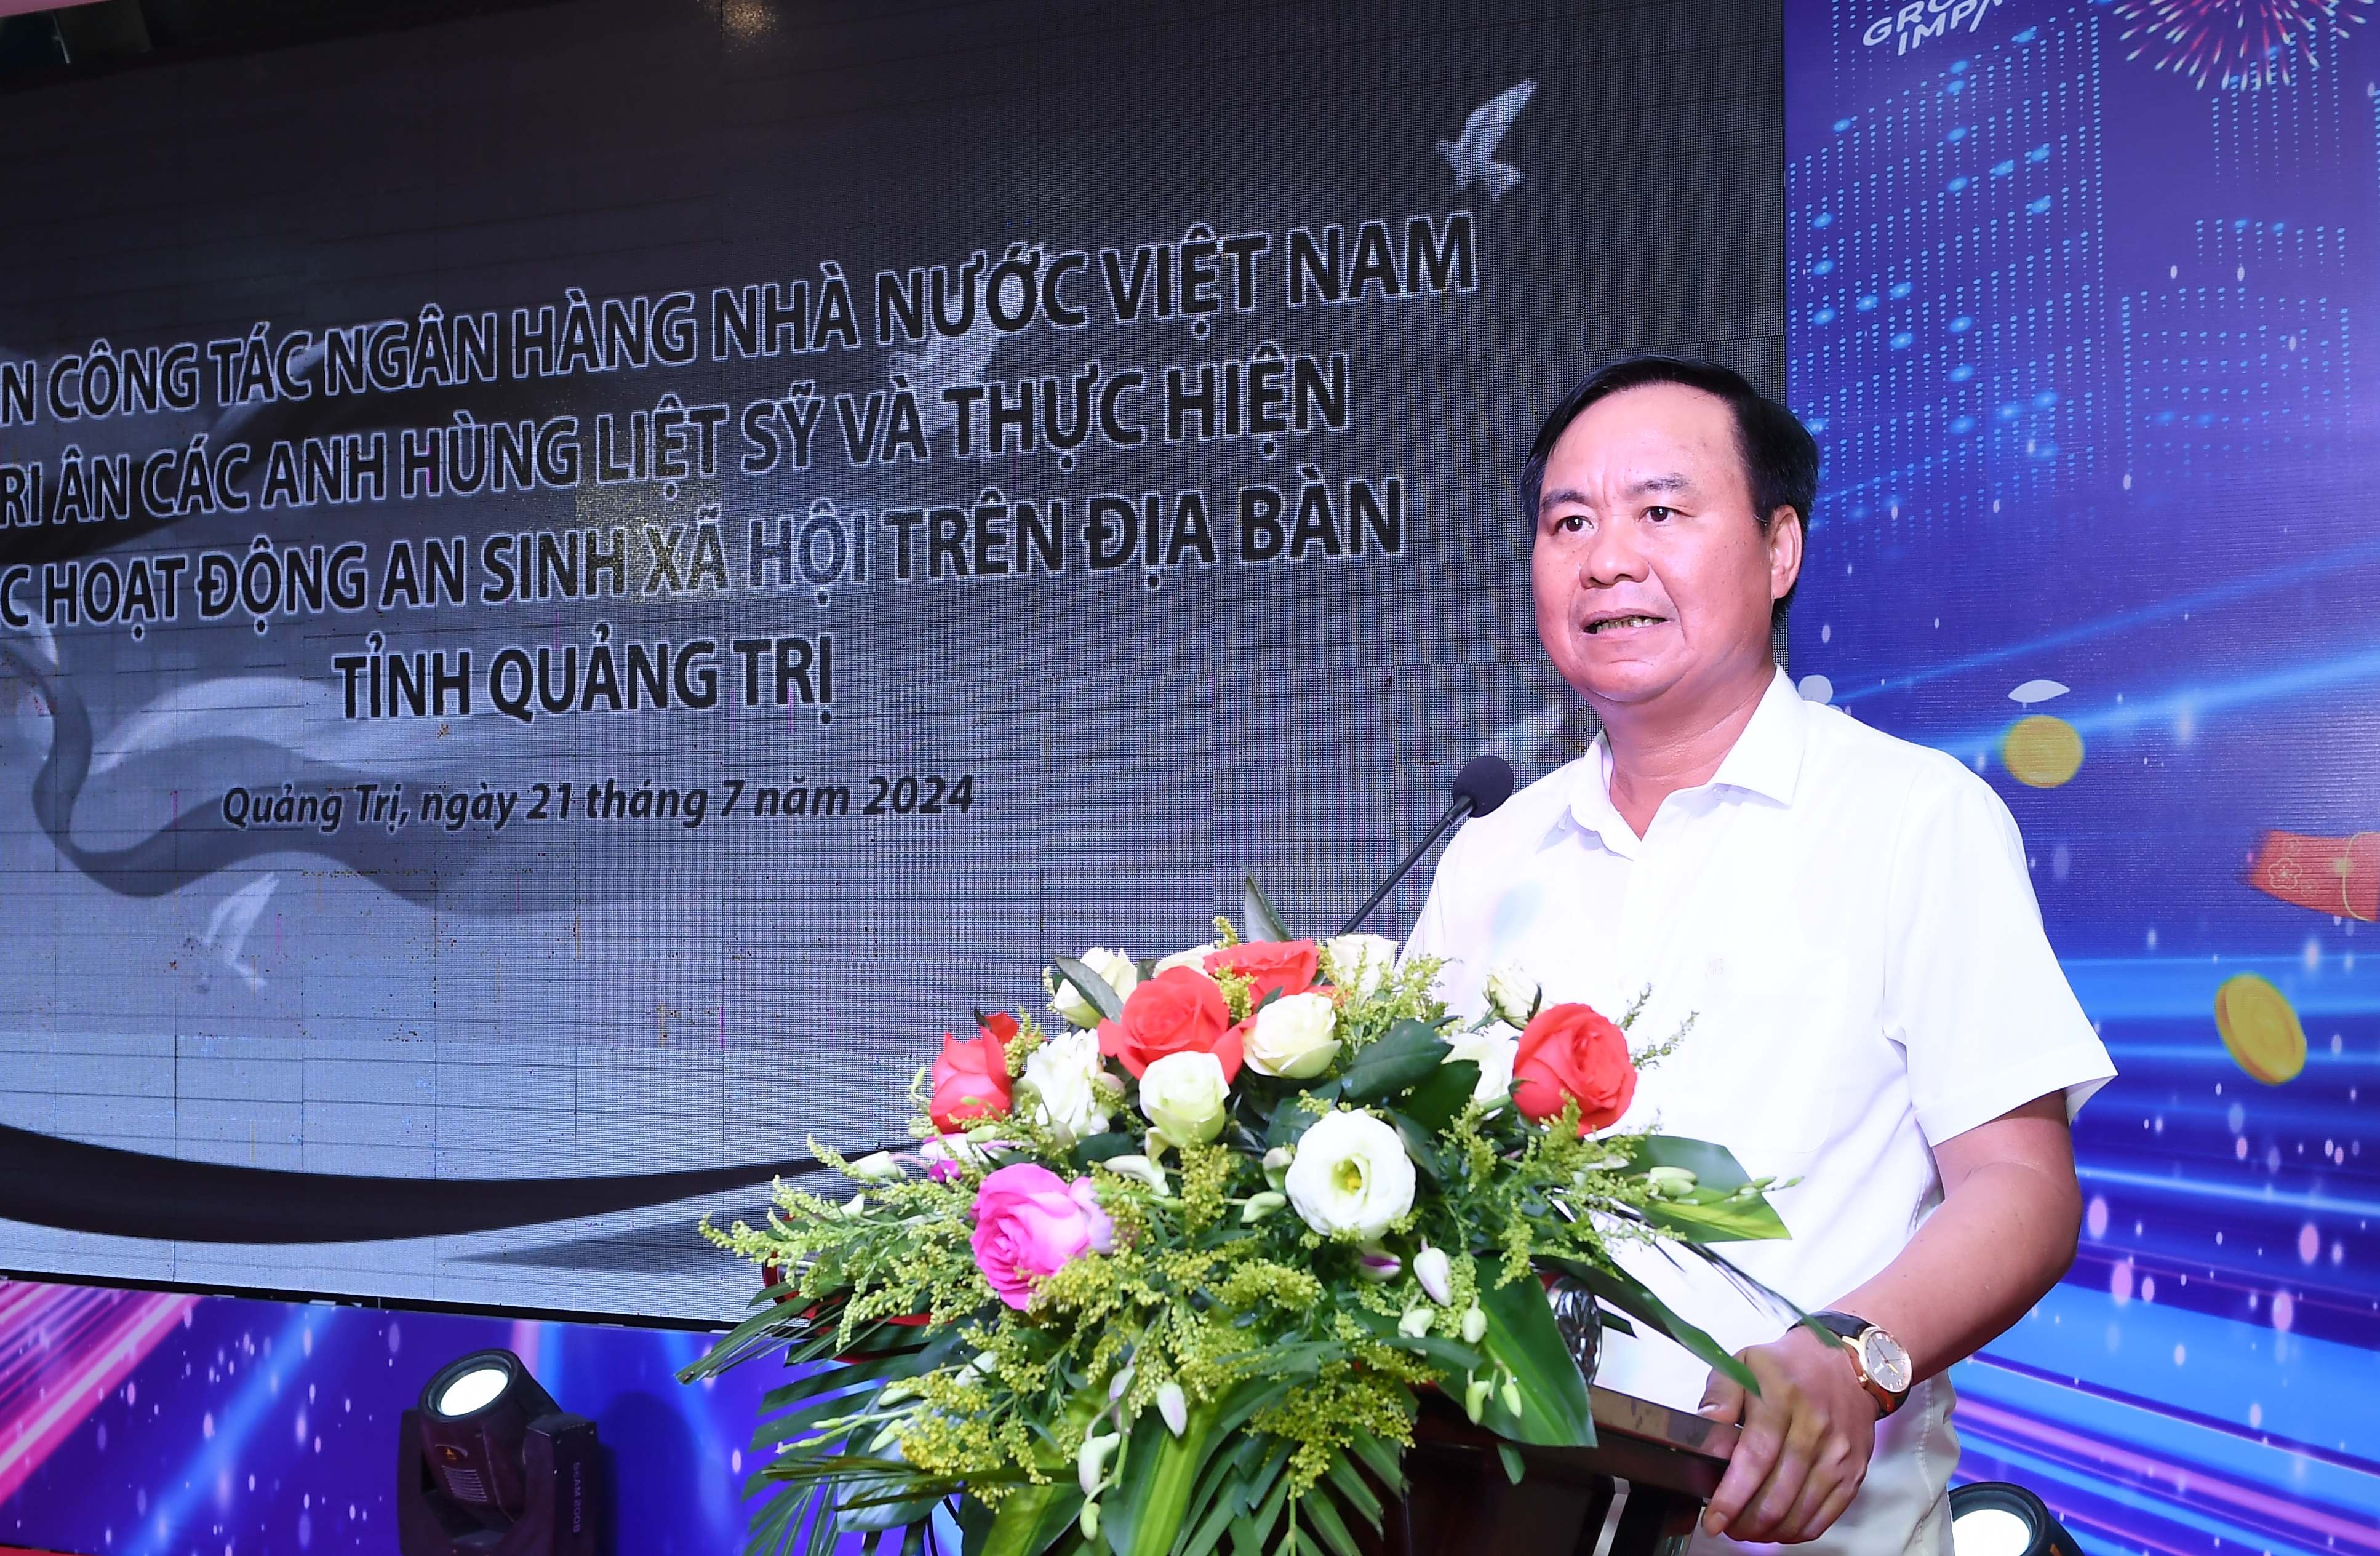 Chủ tịch UBND tỉnh Võ Văn Hưng gửi lời cảm ơn đến Ngân hàng Nhà nước Việt Nam Nguyễn Thị Hồng và các đơn vị trong hệ thống